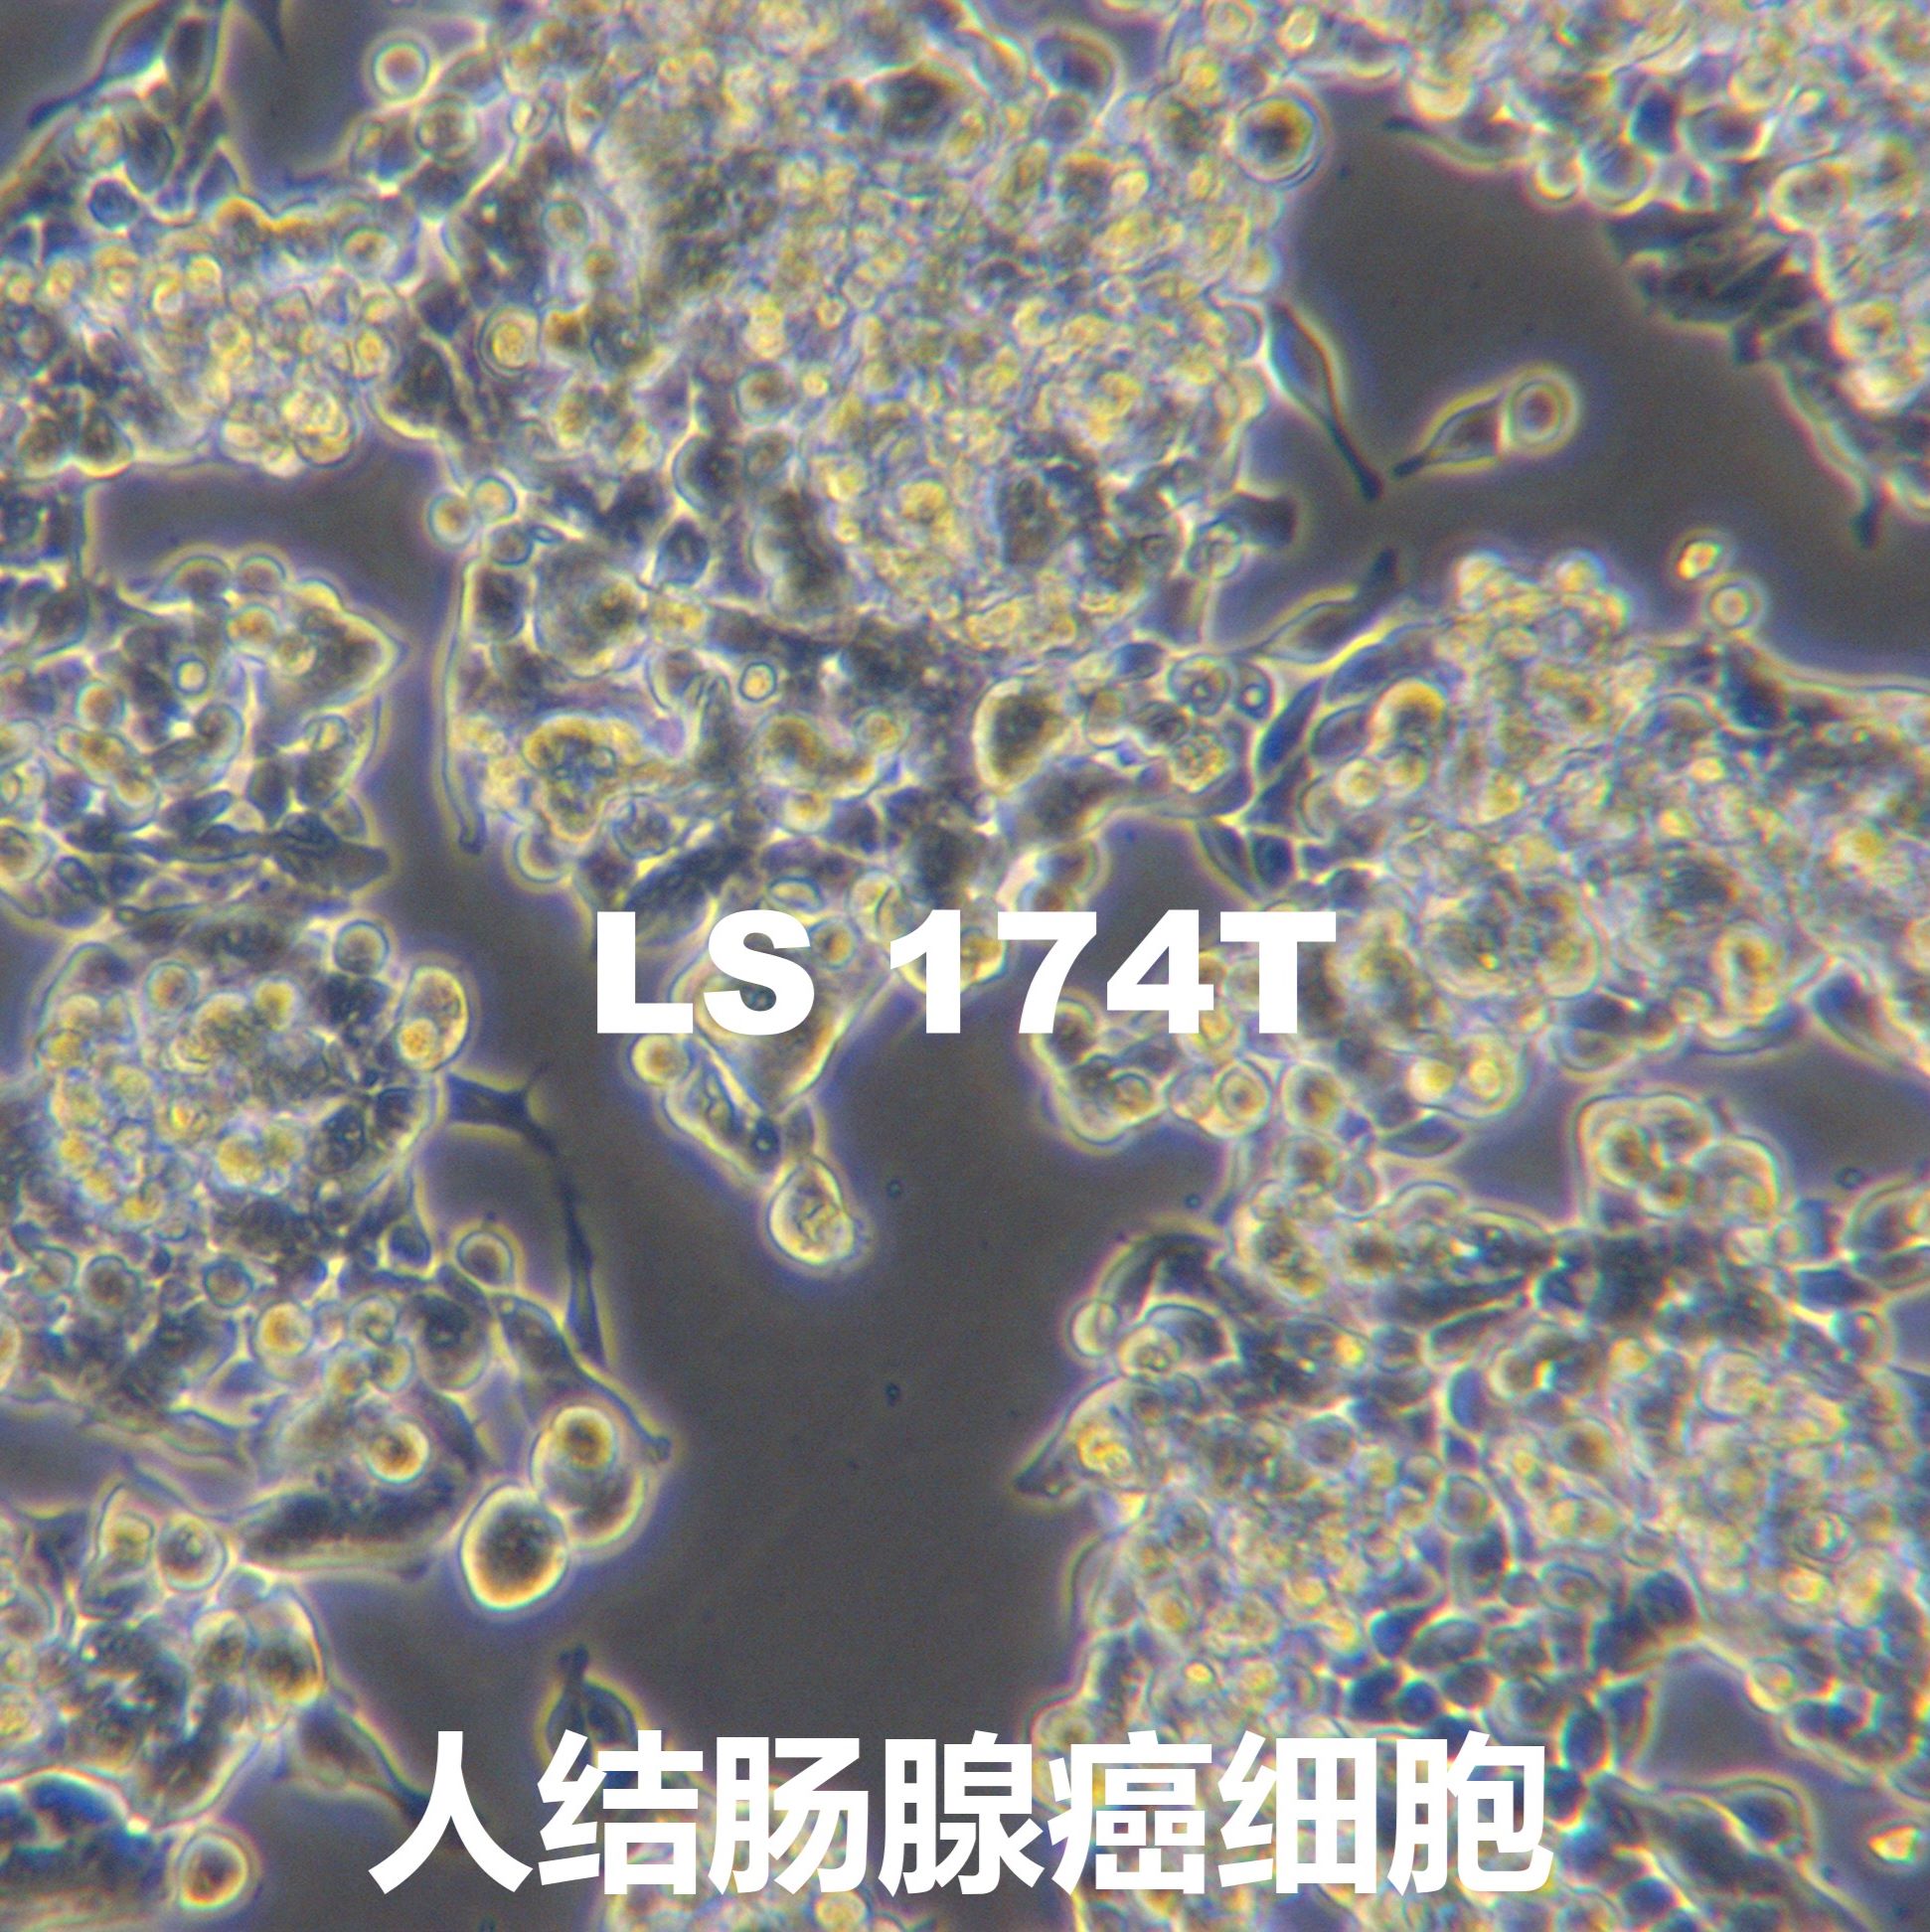 LS 174T[Ls174T; LS174t; Ls-174-T; LS-174-T]人结肠腺癌细胞